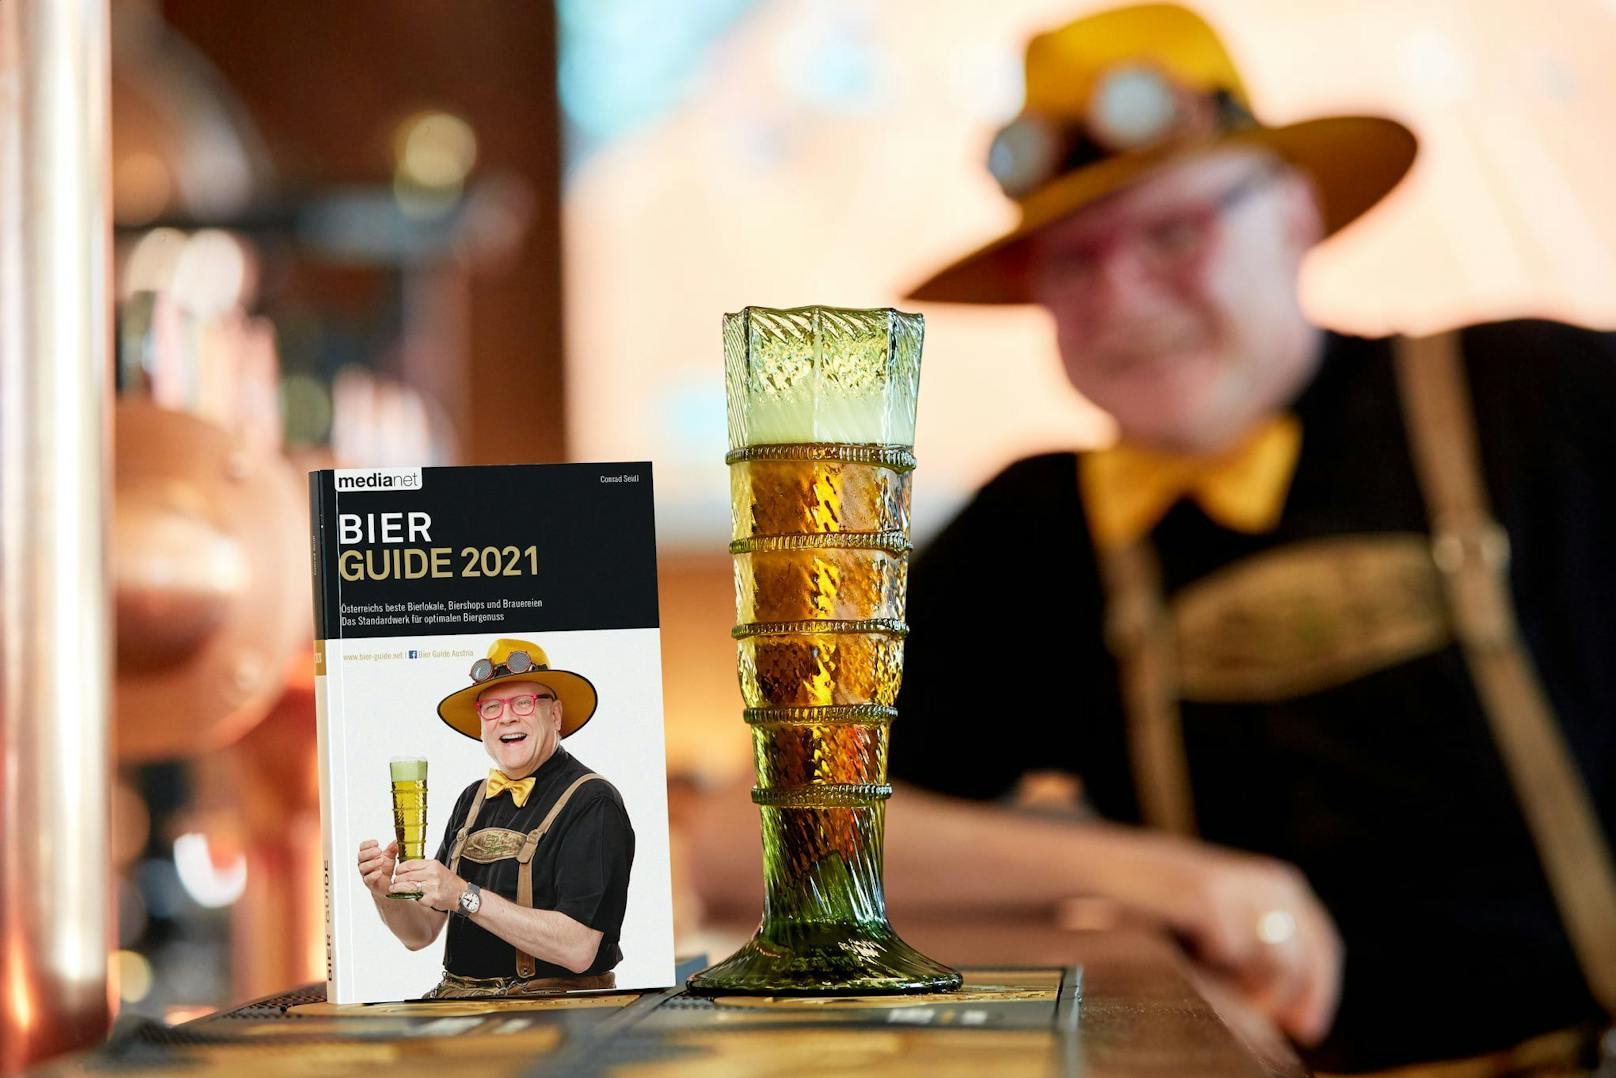 Bier Guide 2021